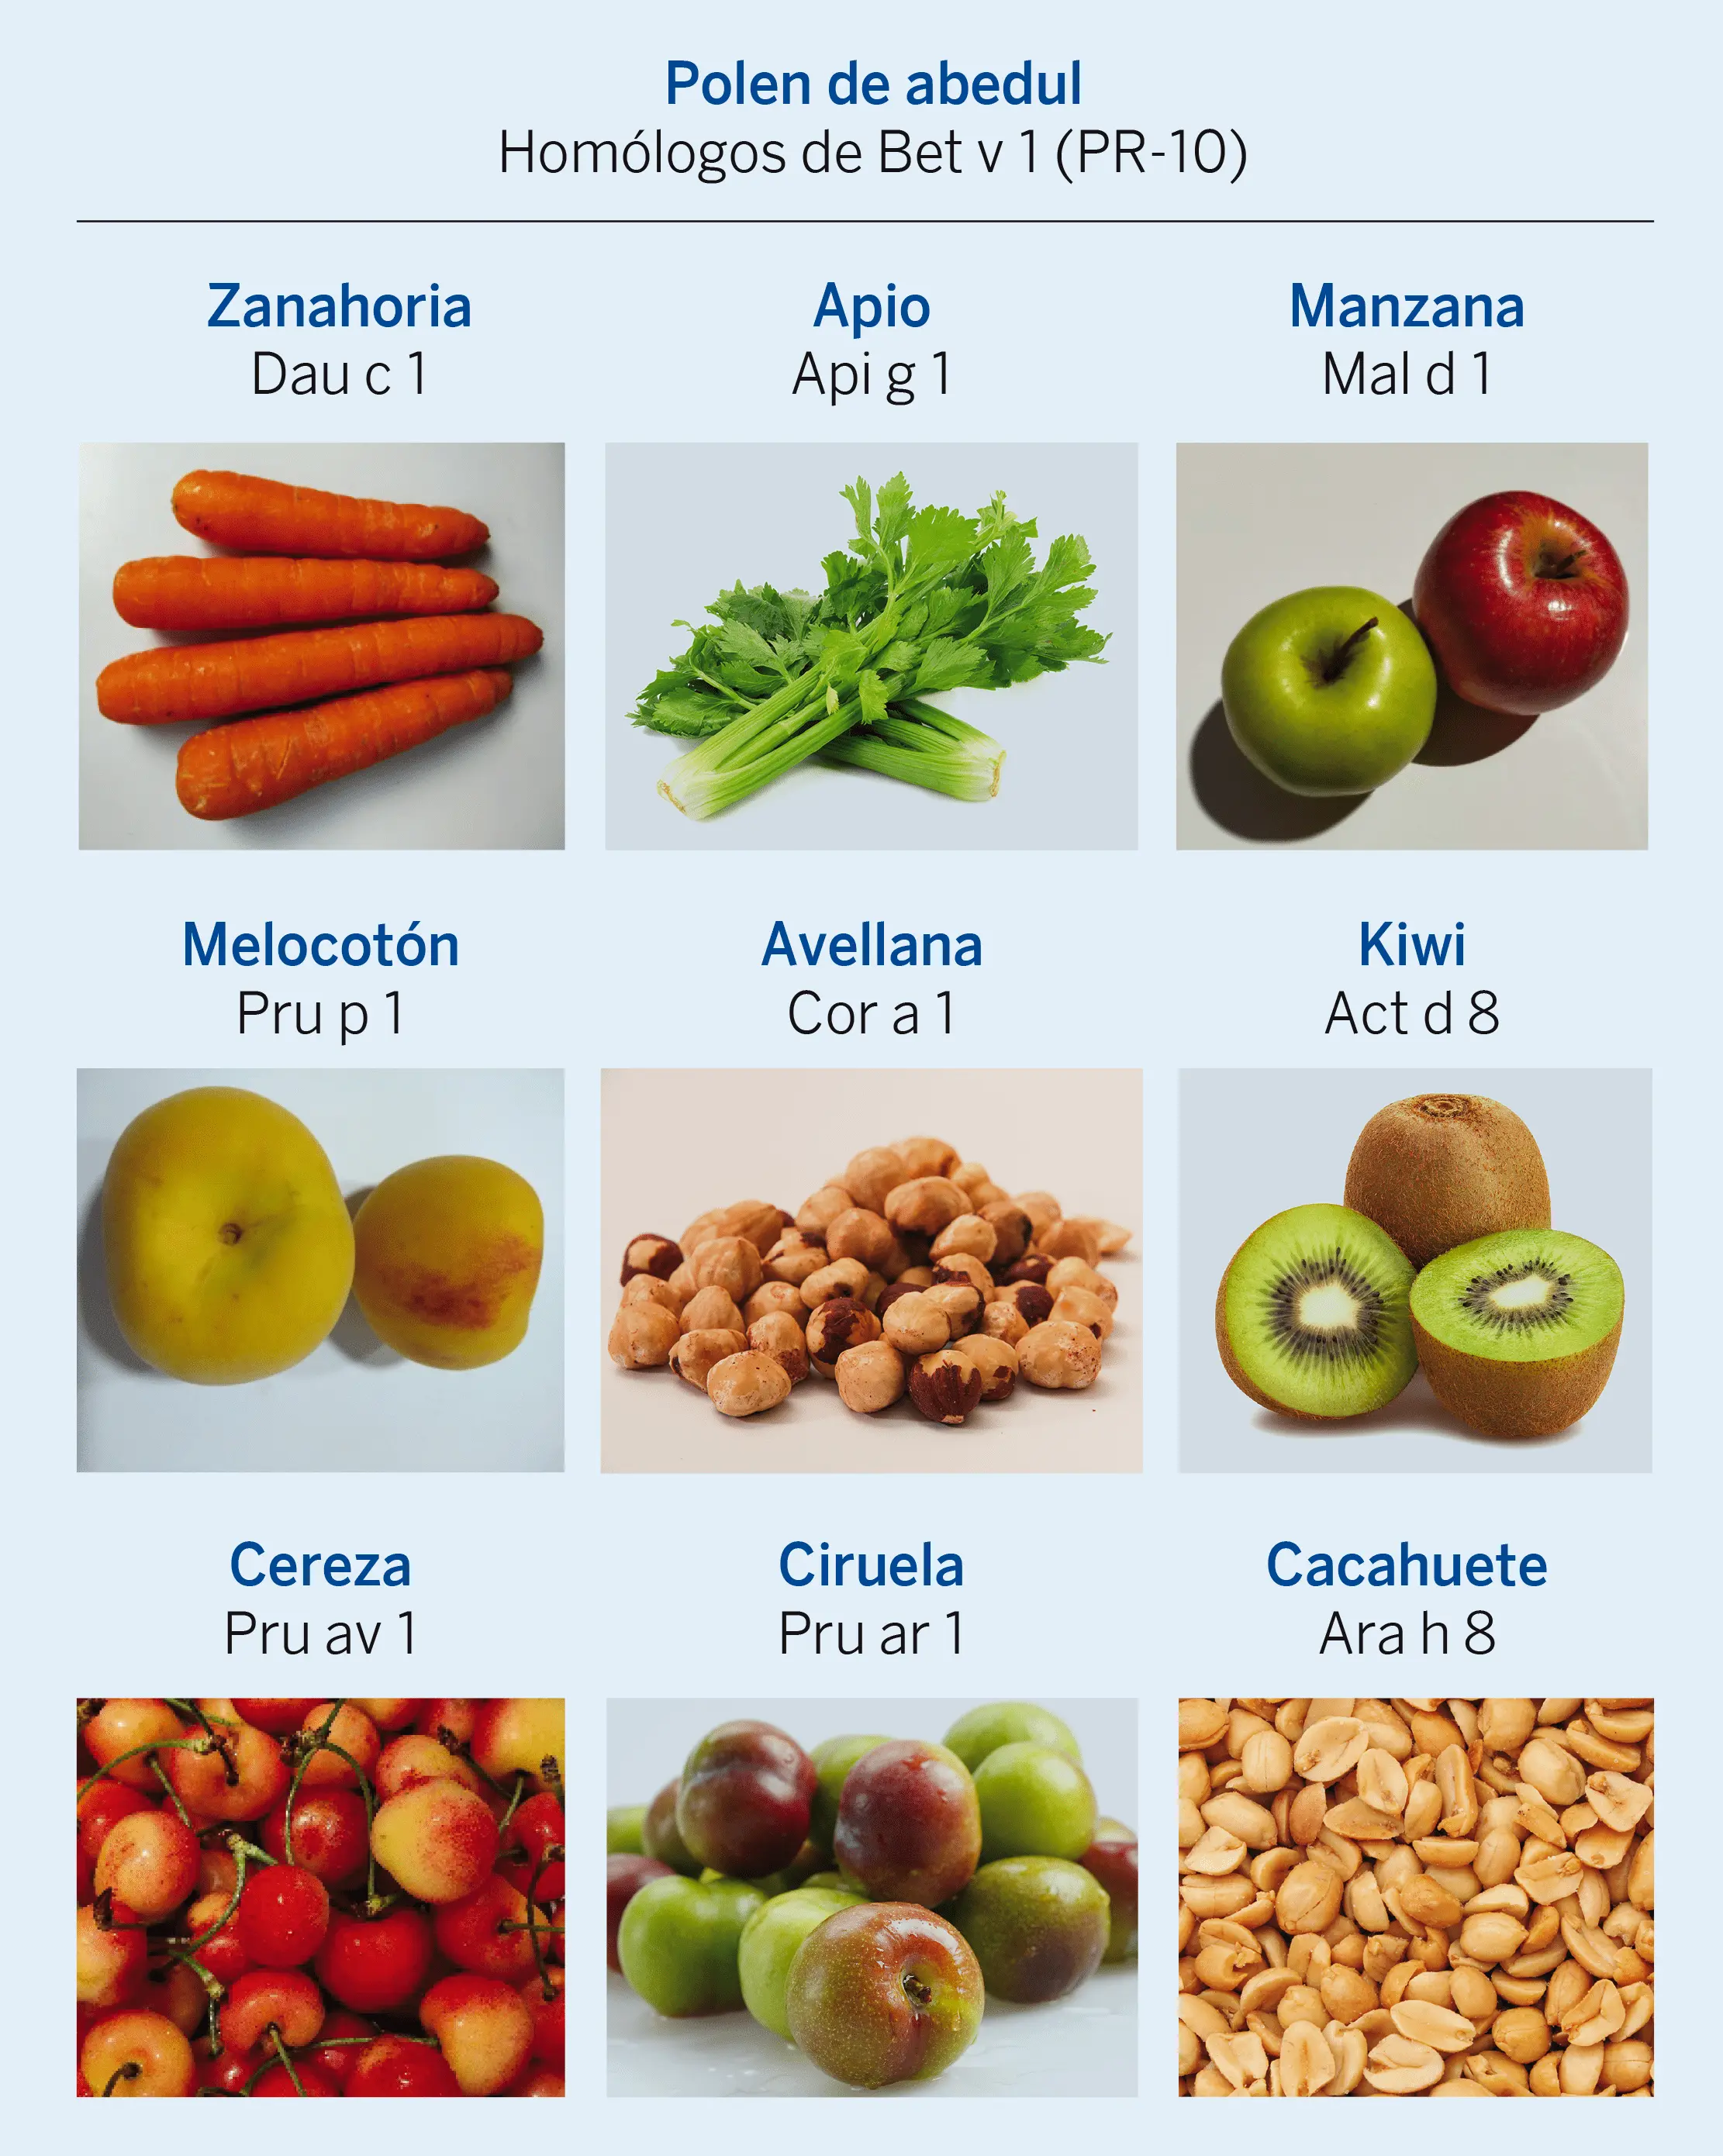 Figura 3. Síndrome abedul-frutas. Proteínas del grupo PR-10 en distintos vegetales, en la nomenclatura internacional de alérgenos